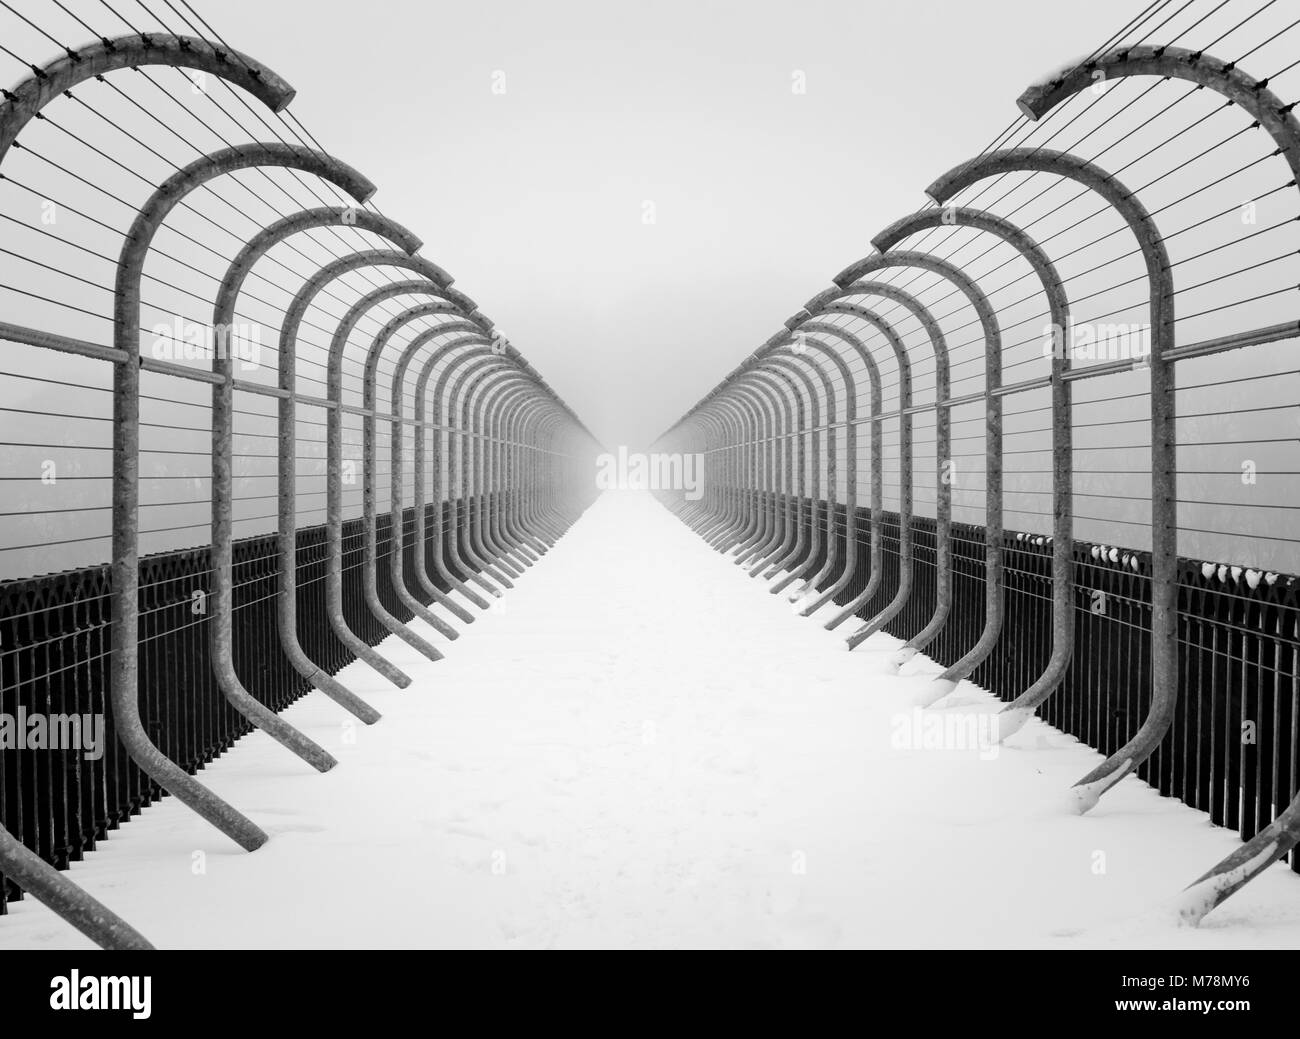 Simili a tunnel in prospettiva di anti suicidio barriere sul ponte in brumoso paesaggio invernale minimalista scena di neve Foto Stock